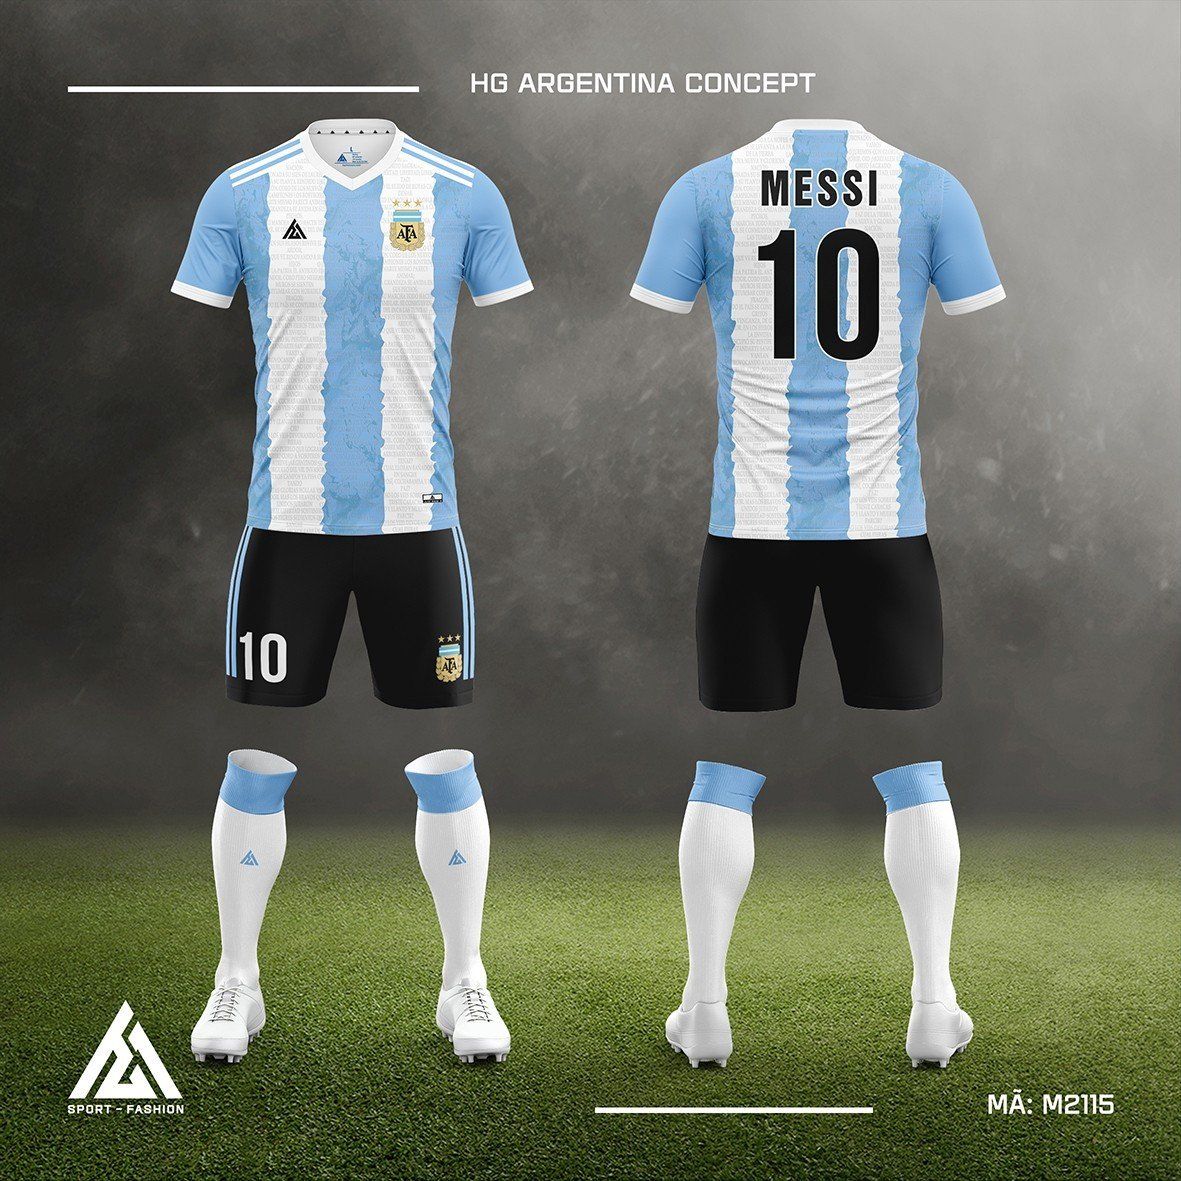  Bộ bóng đá đội tuyển Argentina Concept M2115 